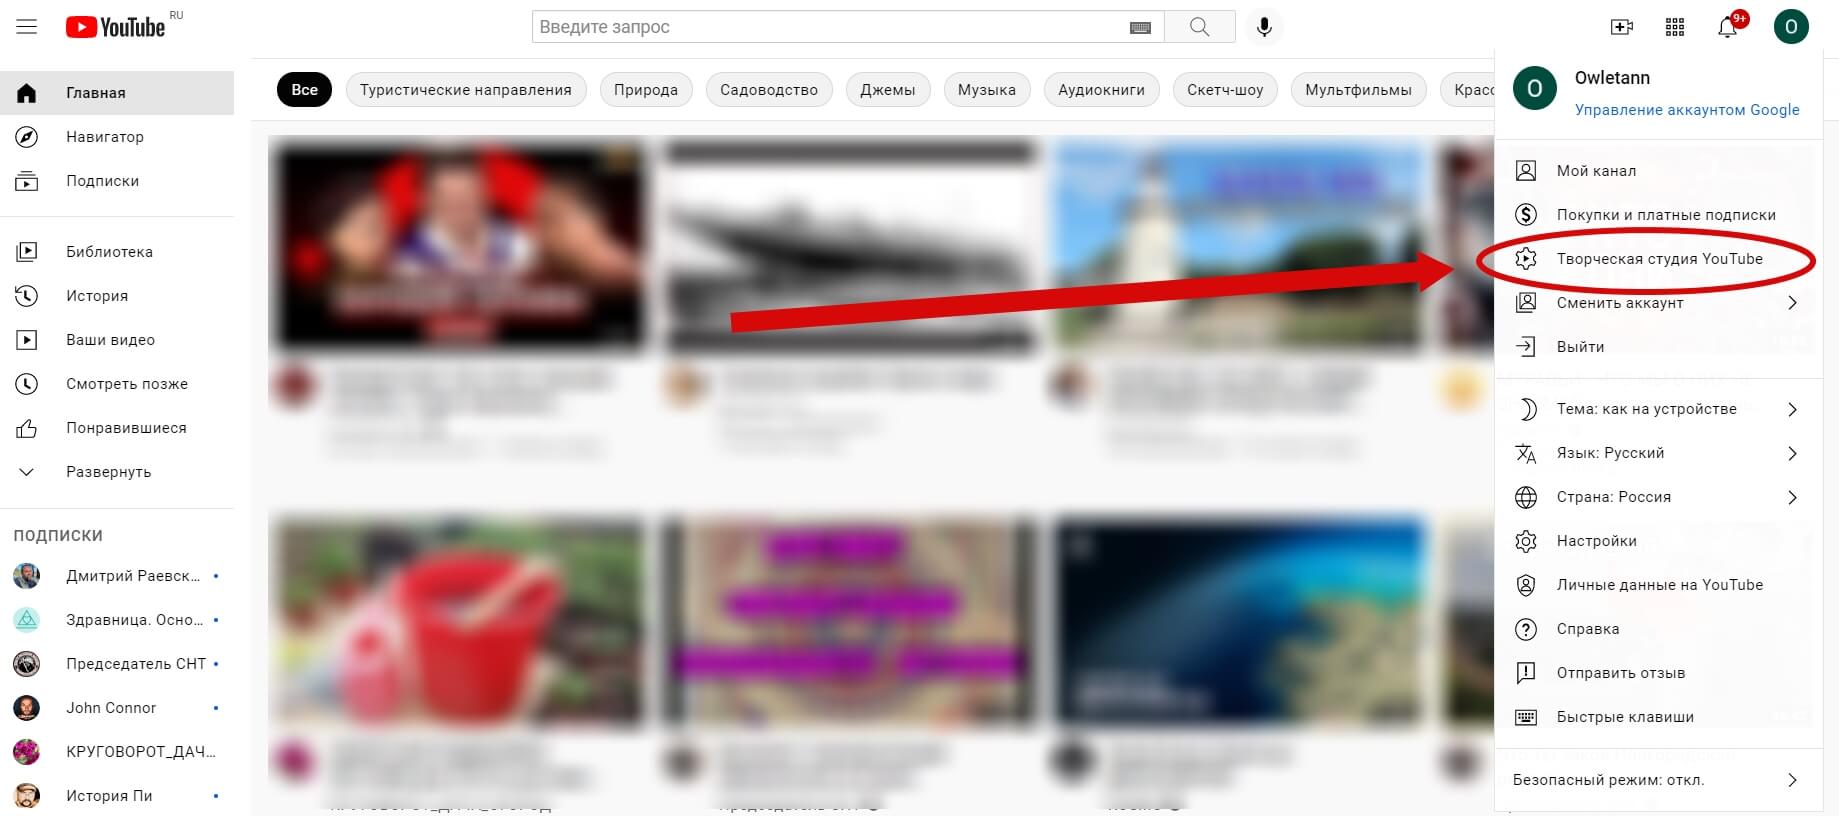 На главной странице приложения нажмите на значок вашего профиля в правом верхнем углу, затем выберите «Творческая студия YouTube»